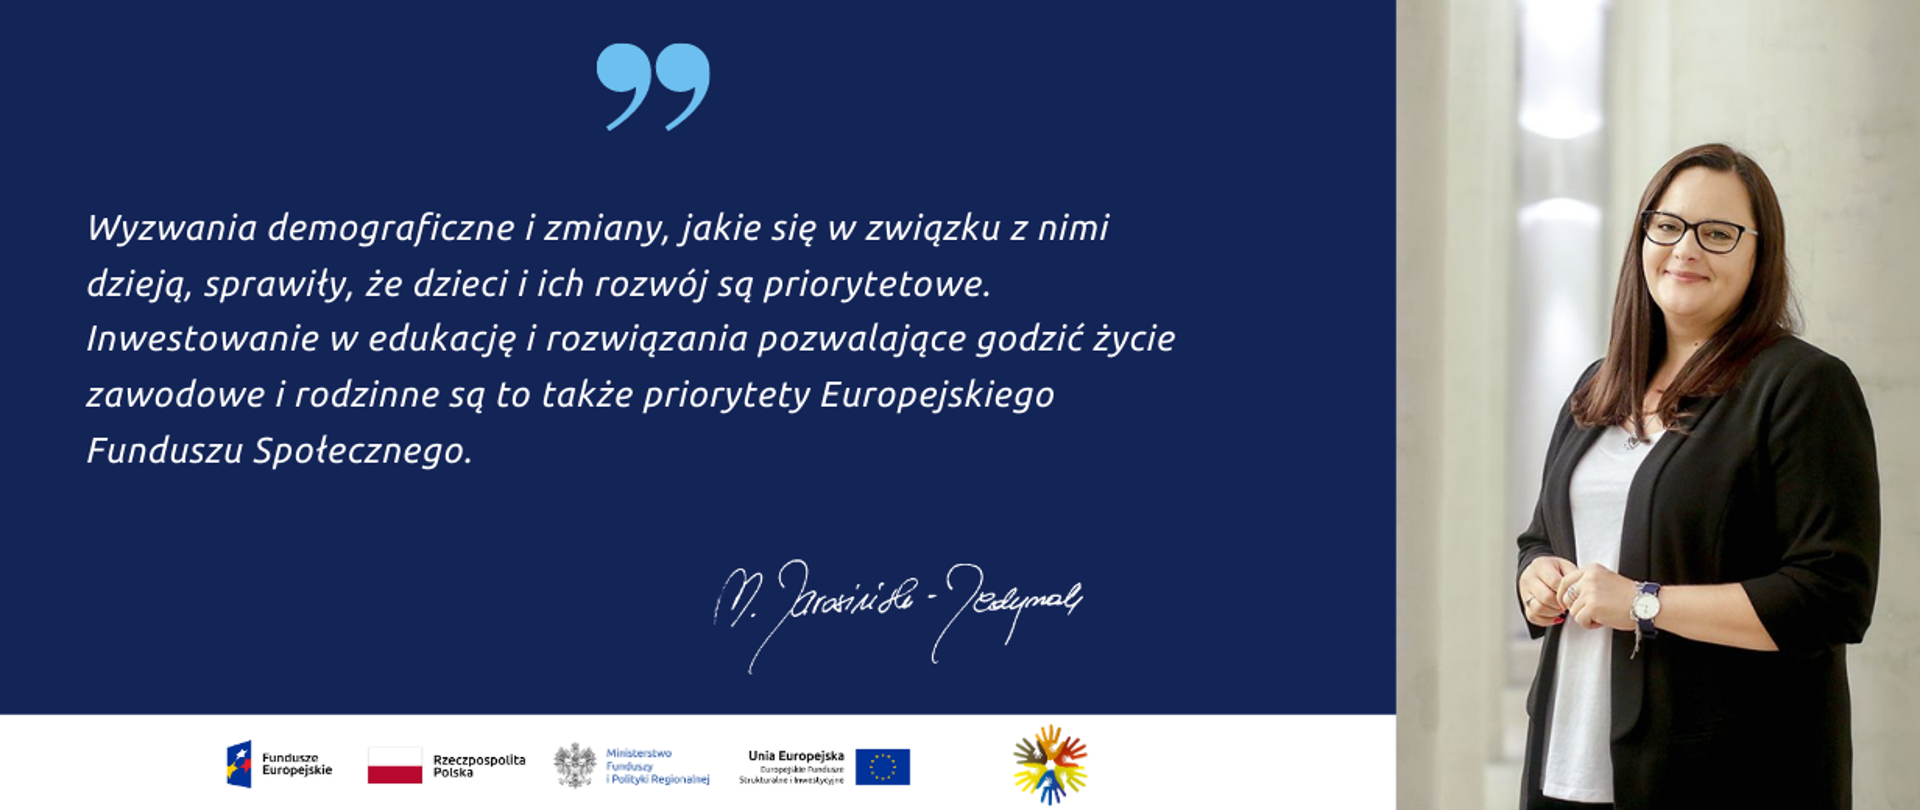 Od lewej napis: „Wyzwania demograficzne i zmiany jakie się w związku z nimi dzieją sprawiają, że dzieci i ich rozwój stają się jednymi z najważniejszych priorytetów dla Polski. Dlatego tak ważne jest inwestowanie w opiekę i edukację dzieci. Jest to także jeden z priorytetów Europejskiego Funduszu Społecznego wdrażanego w Polsce od 2004 roku.”. Obok zdjęcie minister Jarosińskiej-Jedynak.